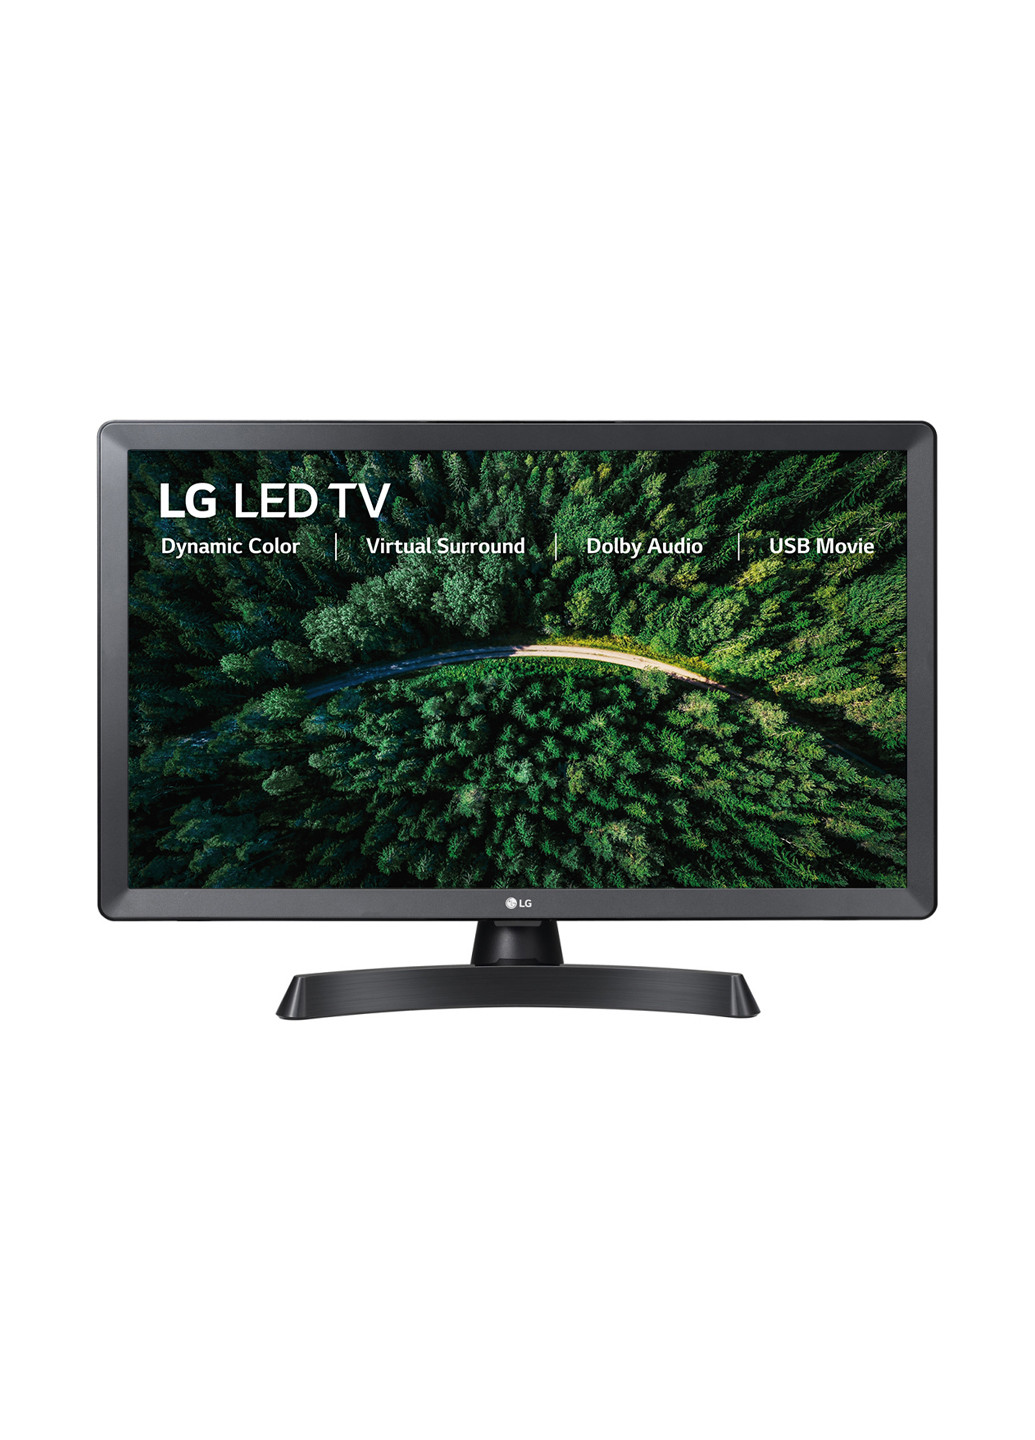 Телевізор LG 28tl510v-pz (141857751)